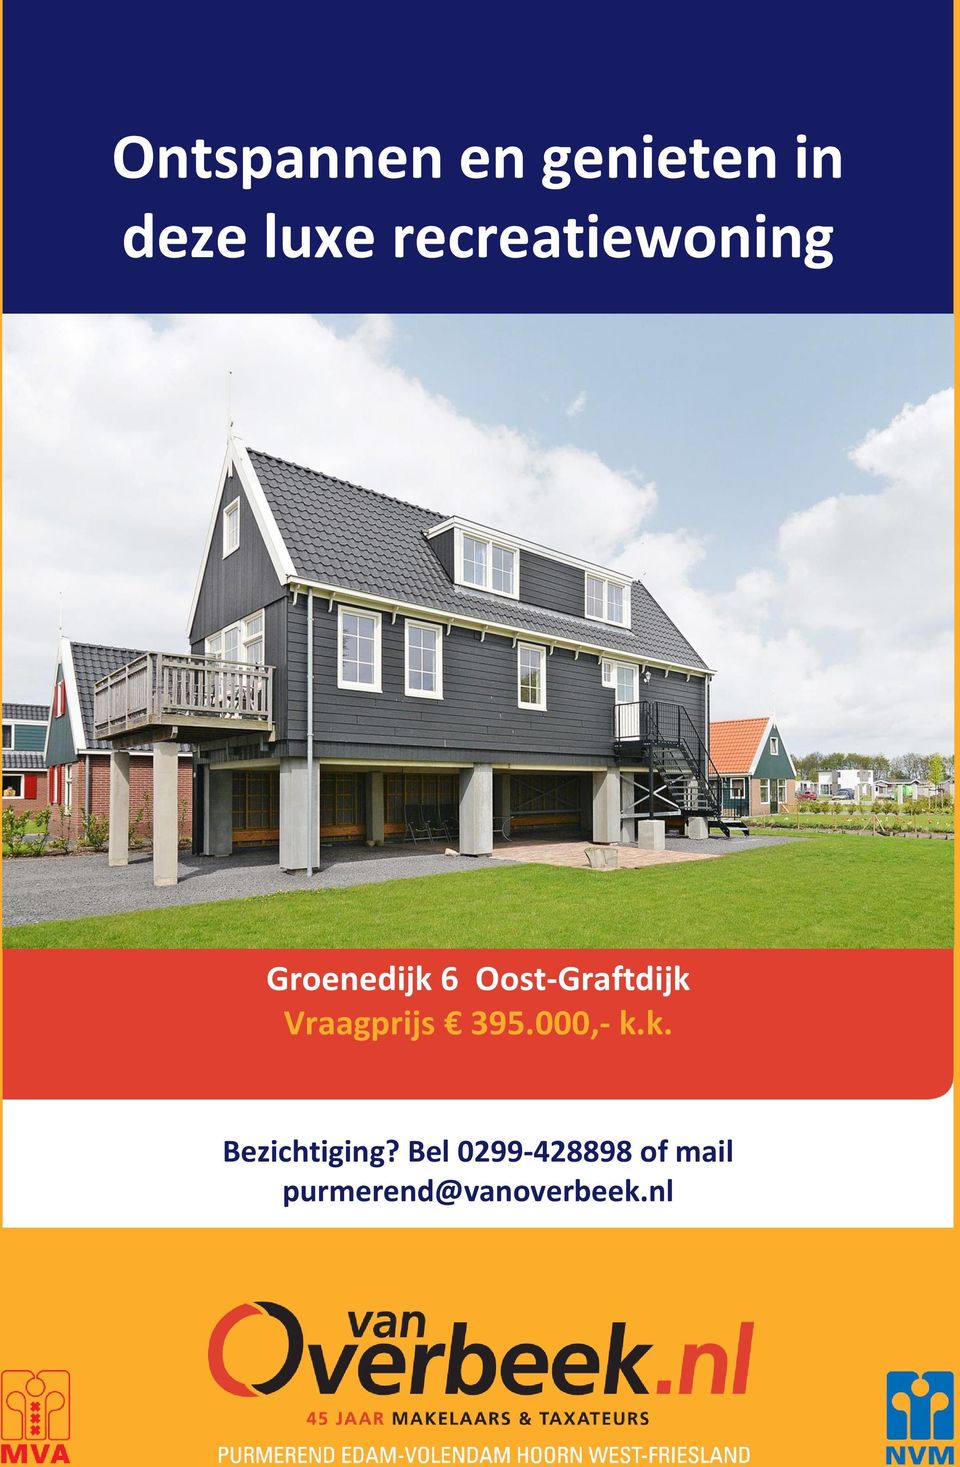 Oost-Graftdijk Vraagprijs 395.000,- k.k. Bezichtiging?